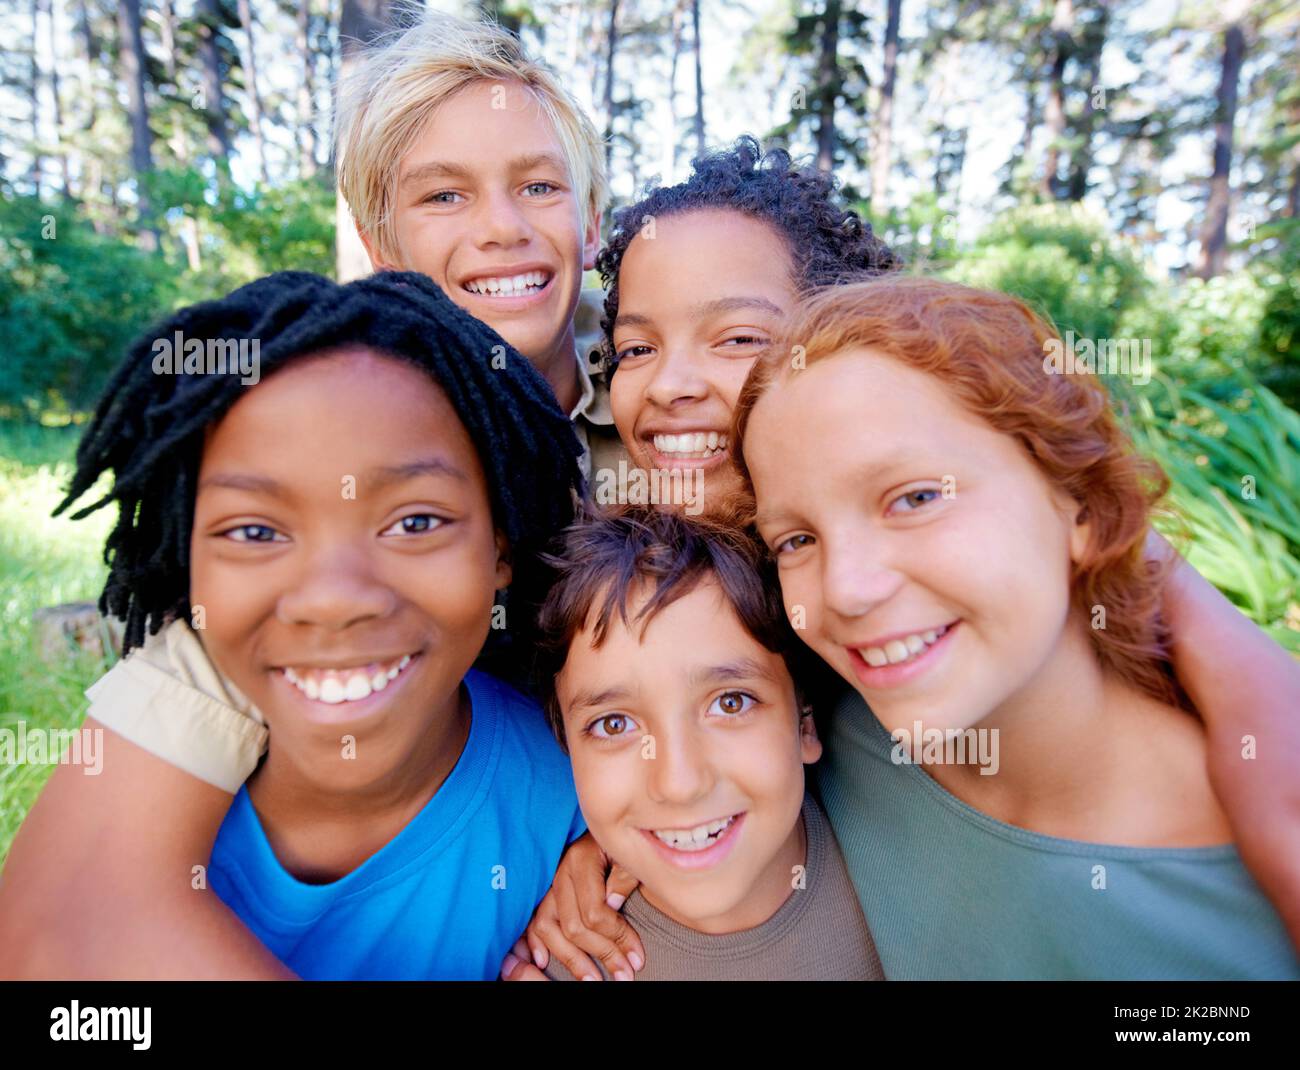 Spaß, Freunde und frische Luft. Eine Nahaufnahme des Bildes einer Gruppe von Kindern, die im Wald stehen und die Kamera anlächeln. Stockfoto